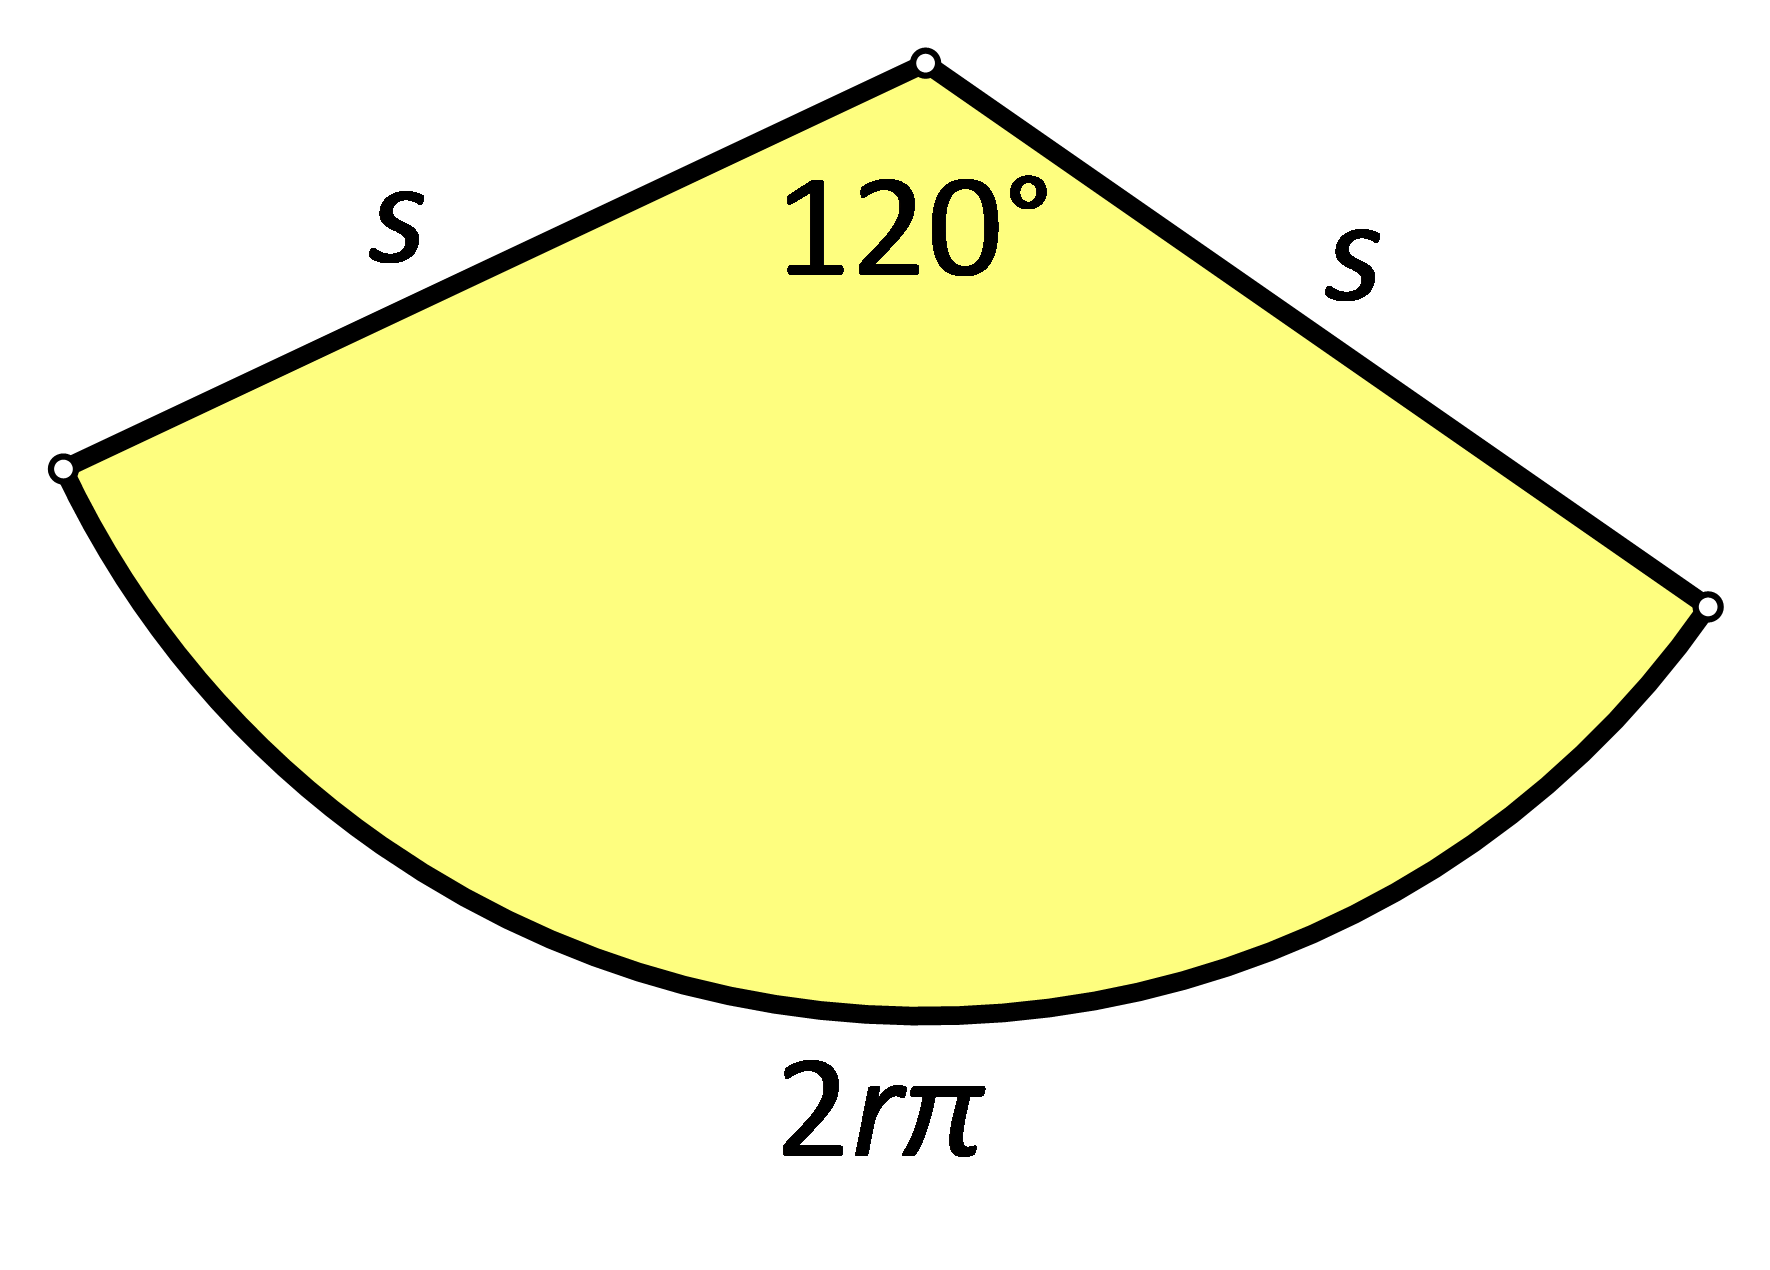 Slika prikazuje plašt stošca sa središnjim kutom veličine 120 stupnjeva.